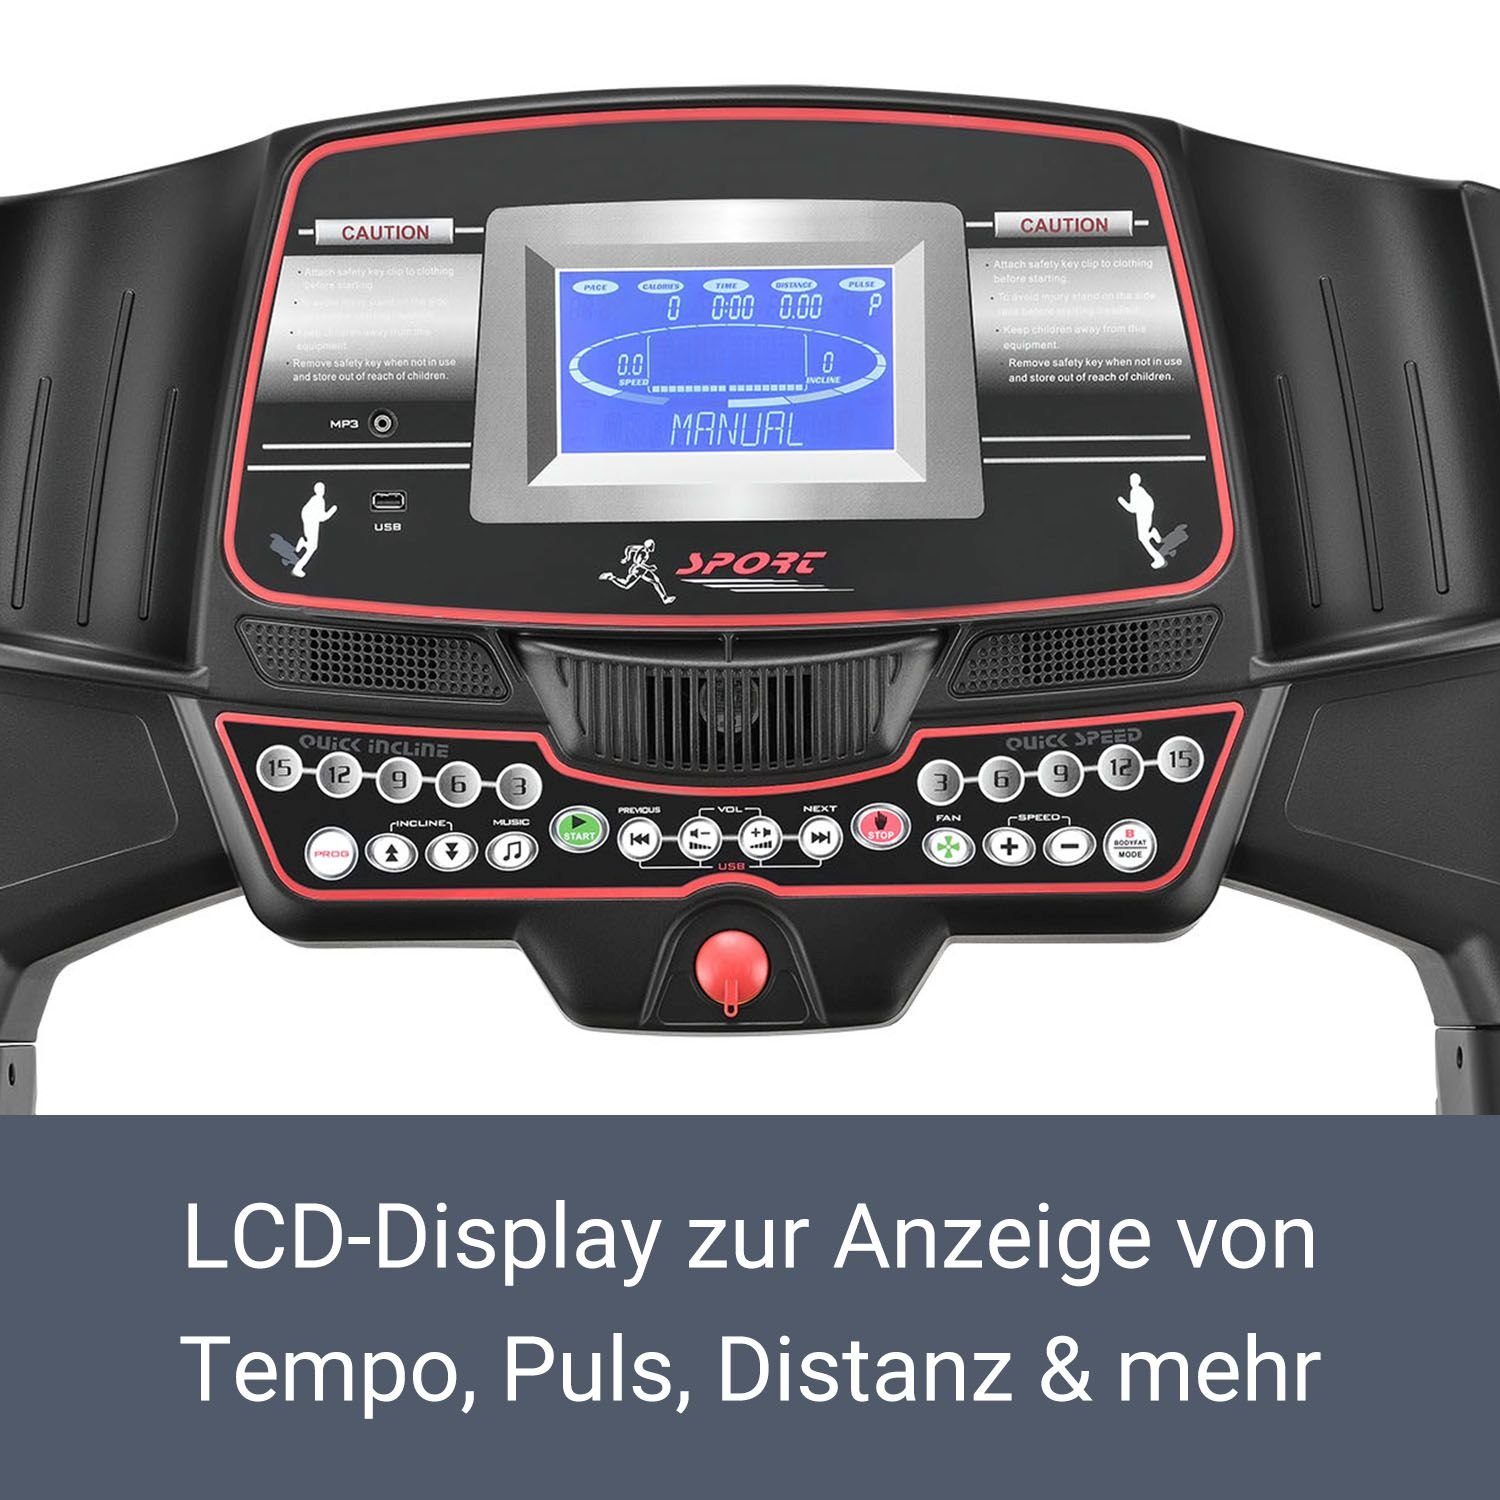 6000, Bildschirm, Trainingsprogramme, LCD mit moderner ArtSport 99 Laufband Speedrunner Pulssensoren